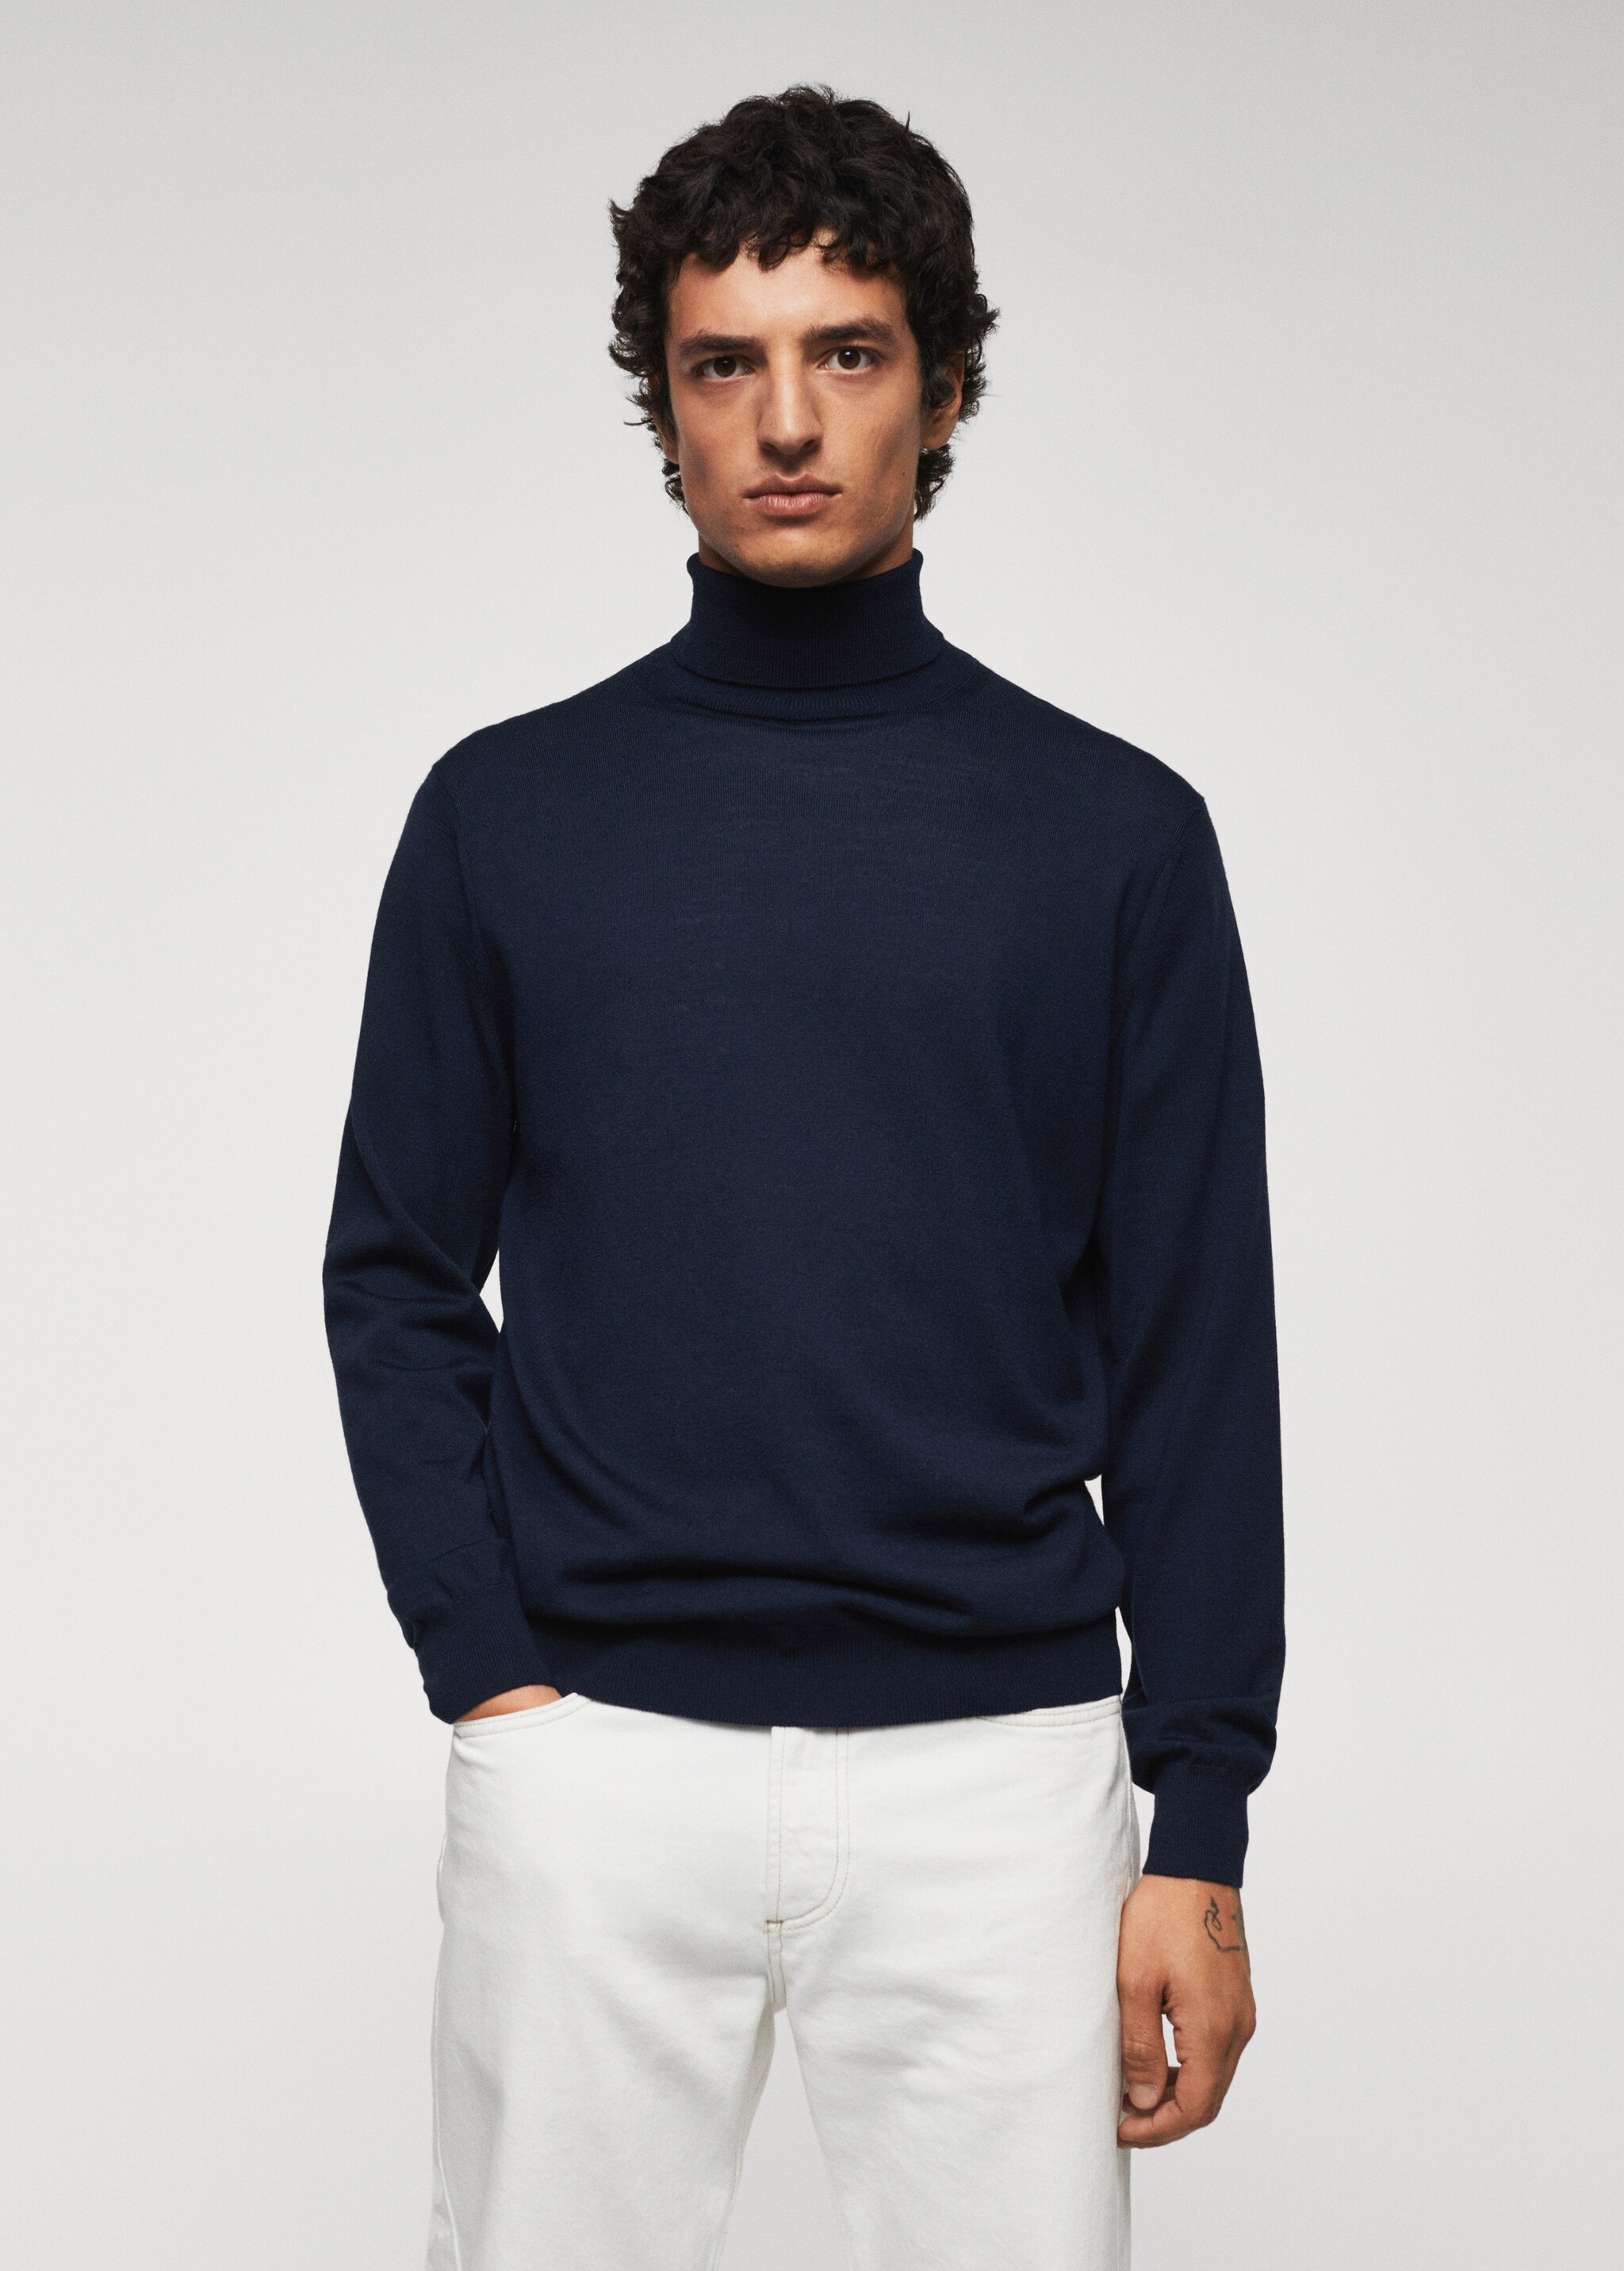 100% merino wool sweater - Medium plane